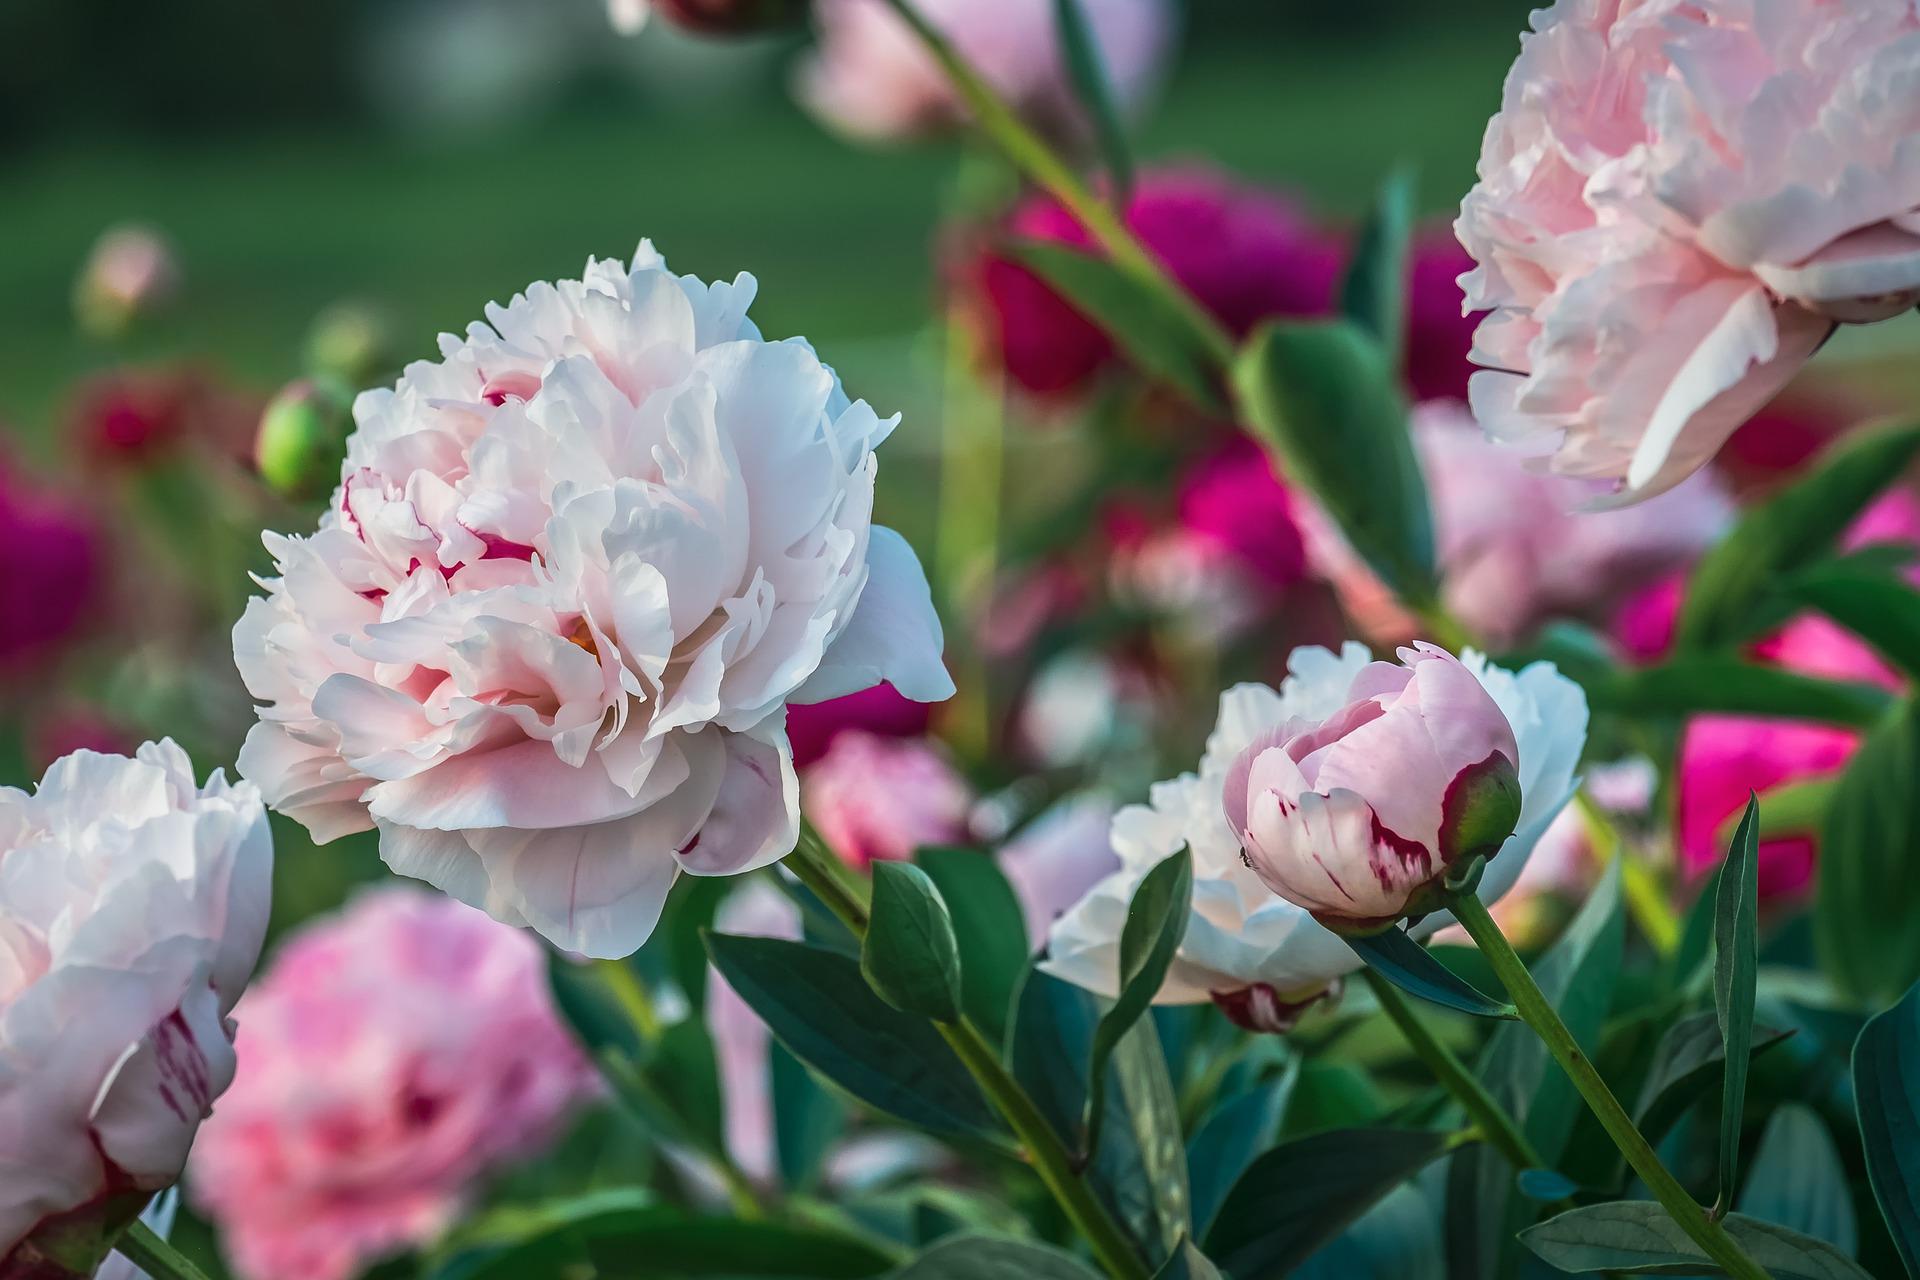 conseils pour voir fleurir de belles pivoines dans son jardin